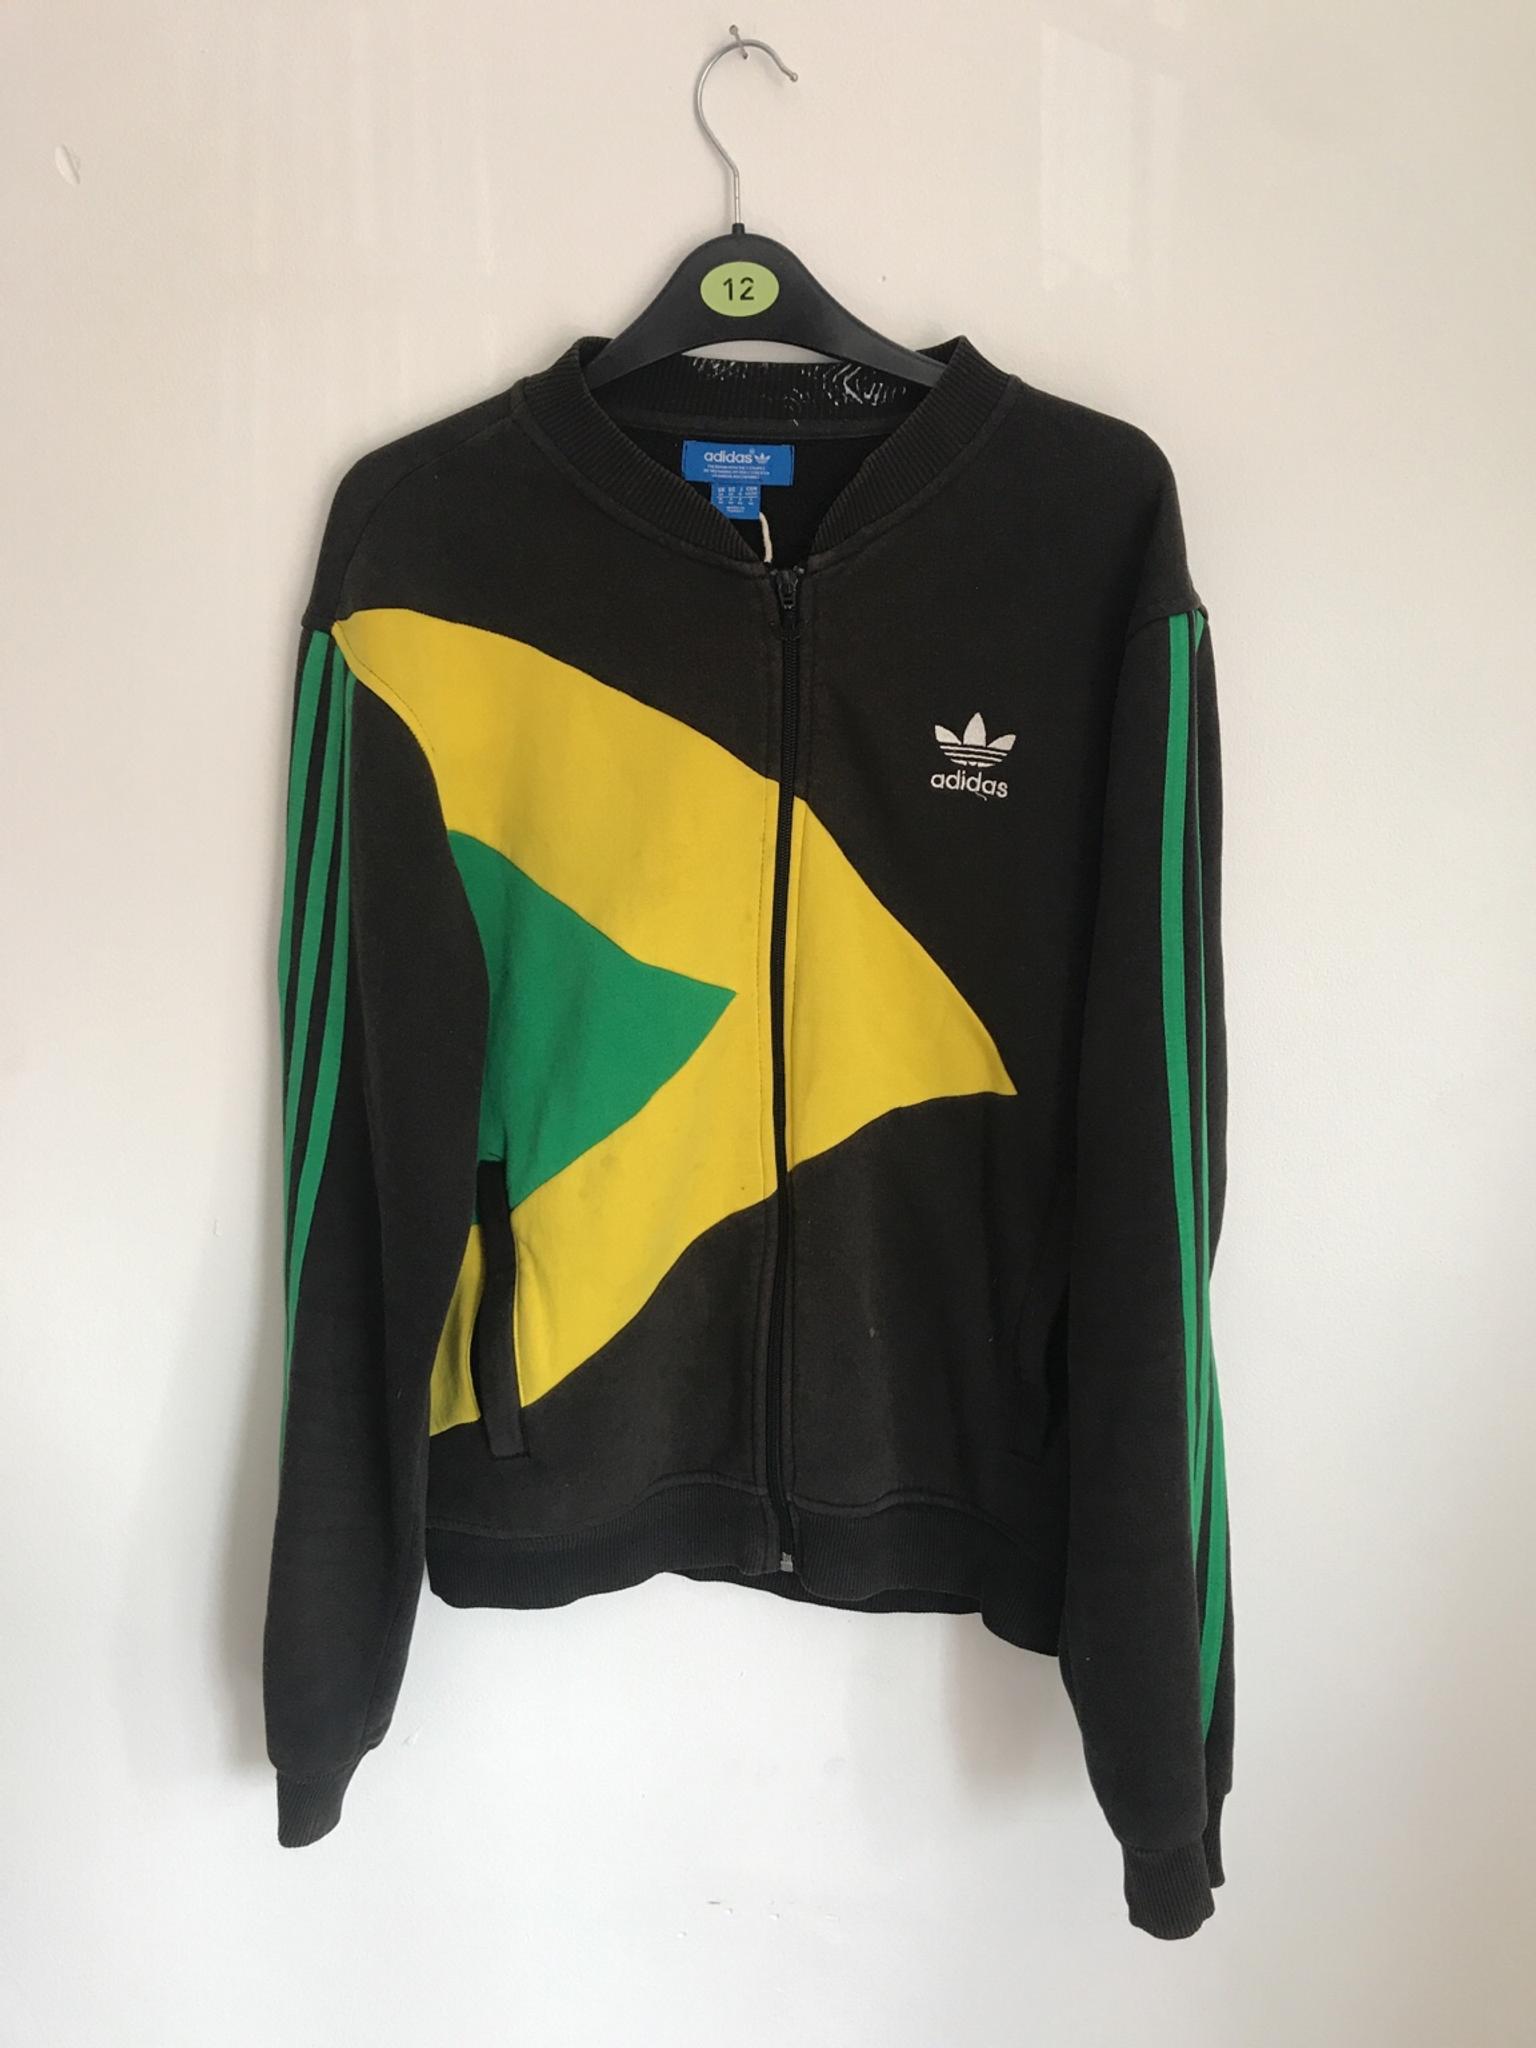 adidas jamaica jumper